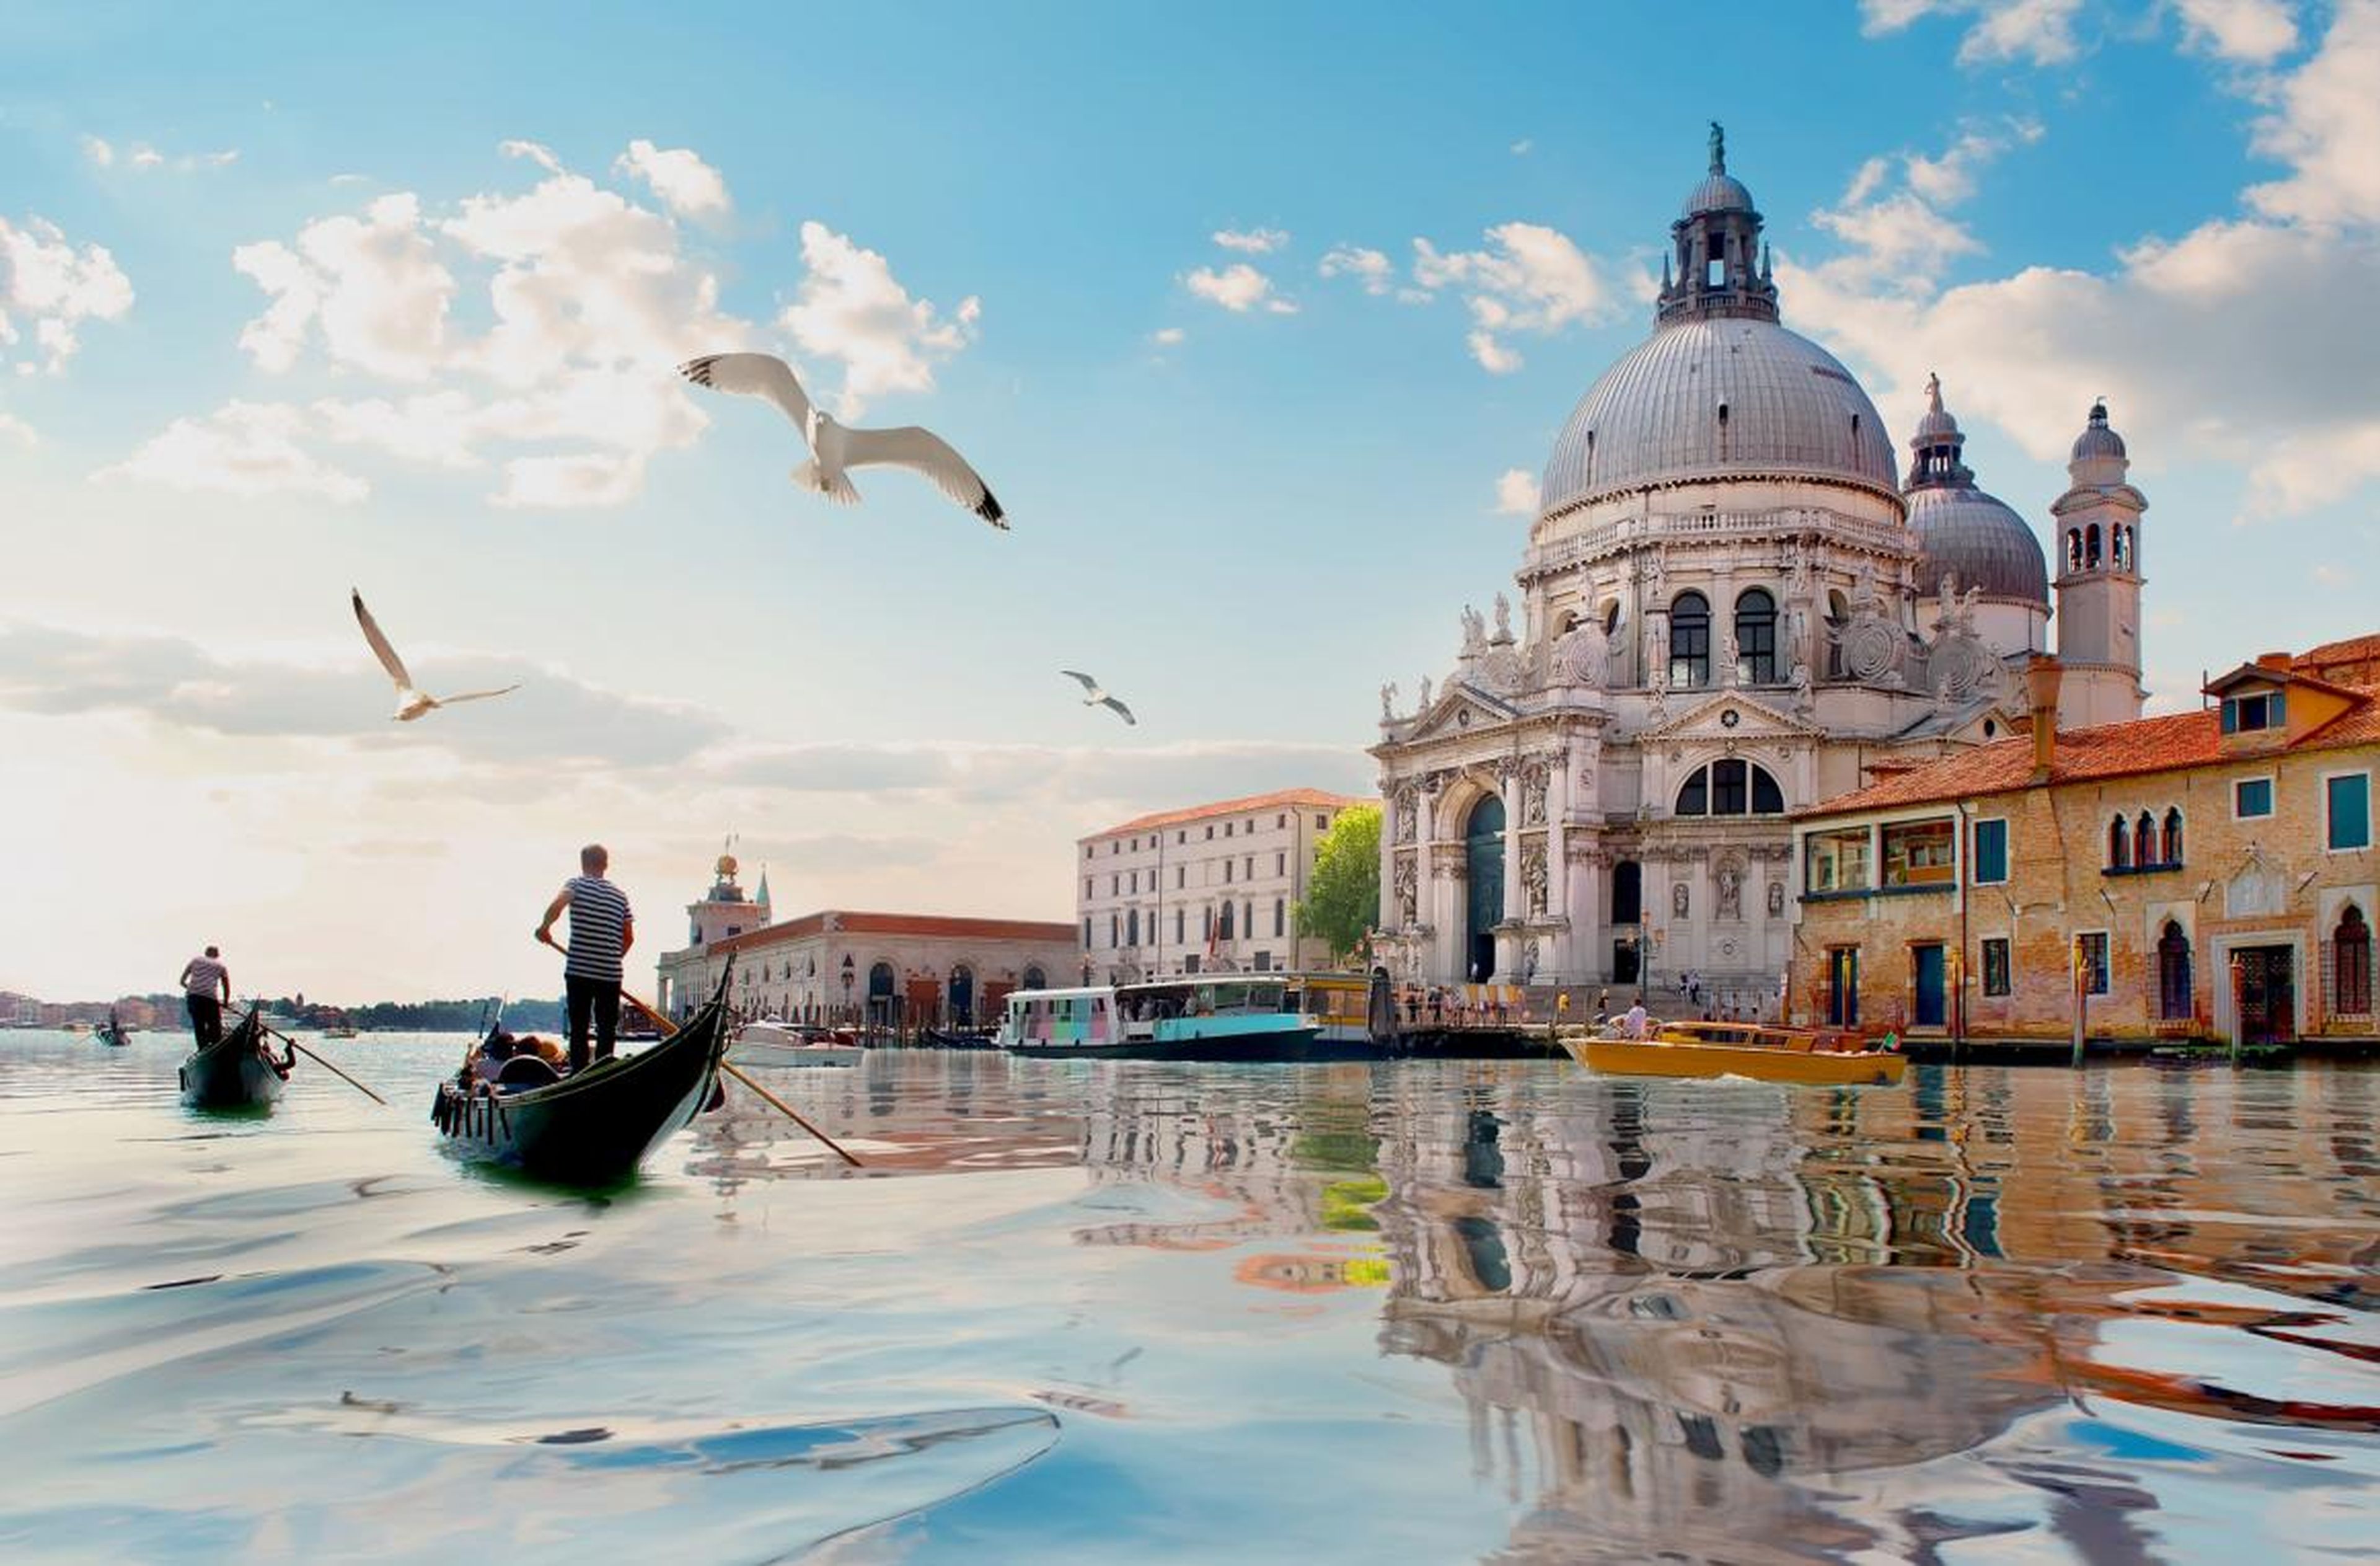 El turismo está expulsando a los nativos de Venecia.